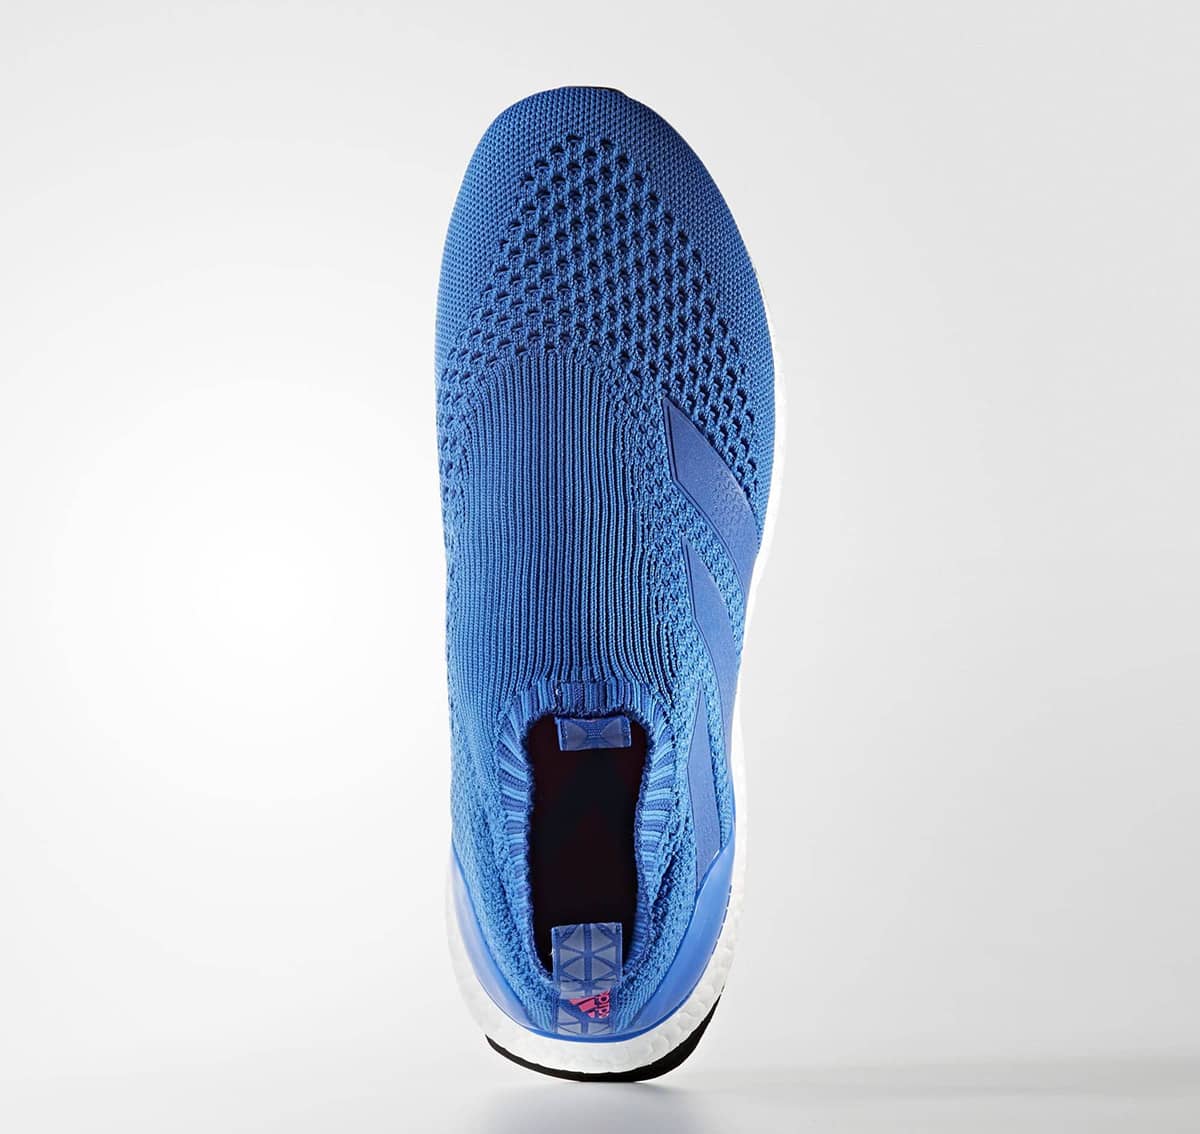 아디다스 사커 블루 블라스트 에이스 16+ 퓨어컨트롤 울트라 부스트(adidas Soccer Blue Blast ACE 16+ PureControl Ultra Boost) 8